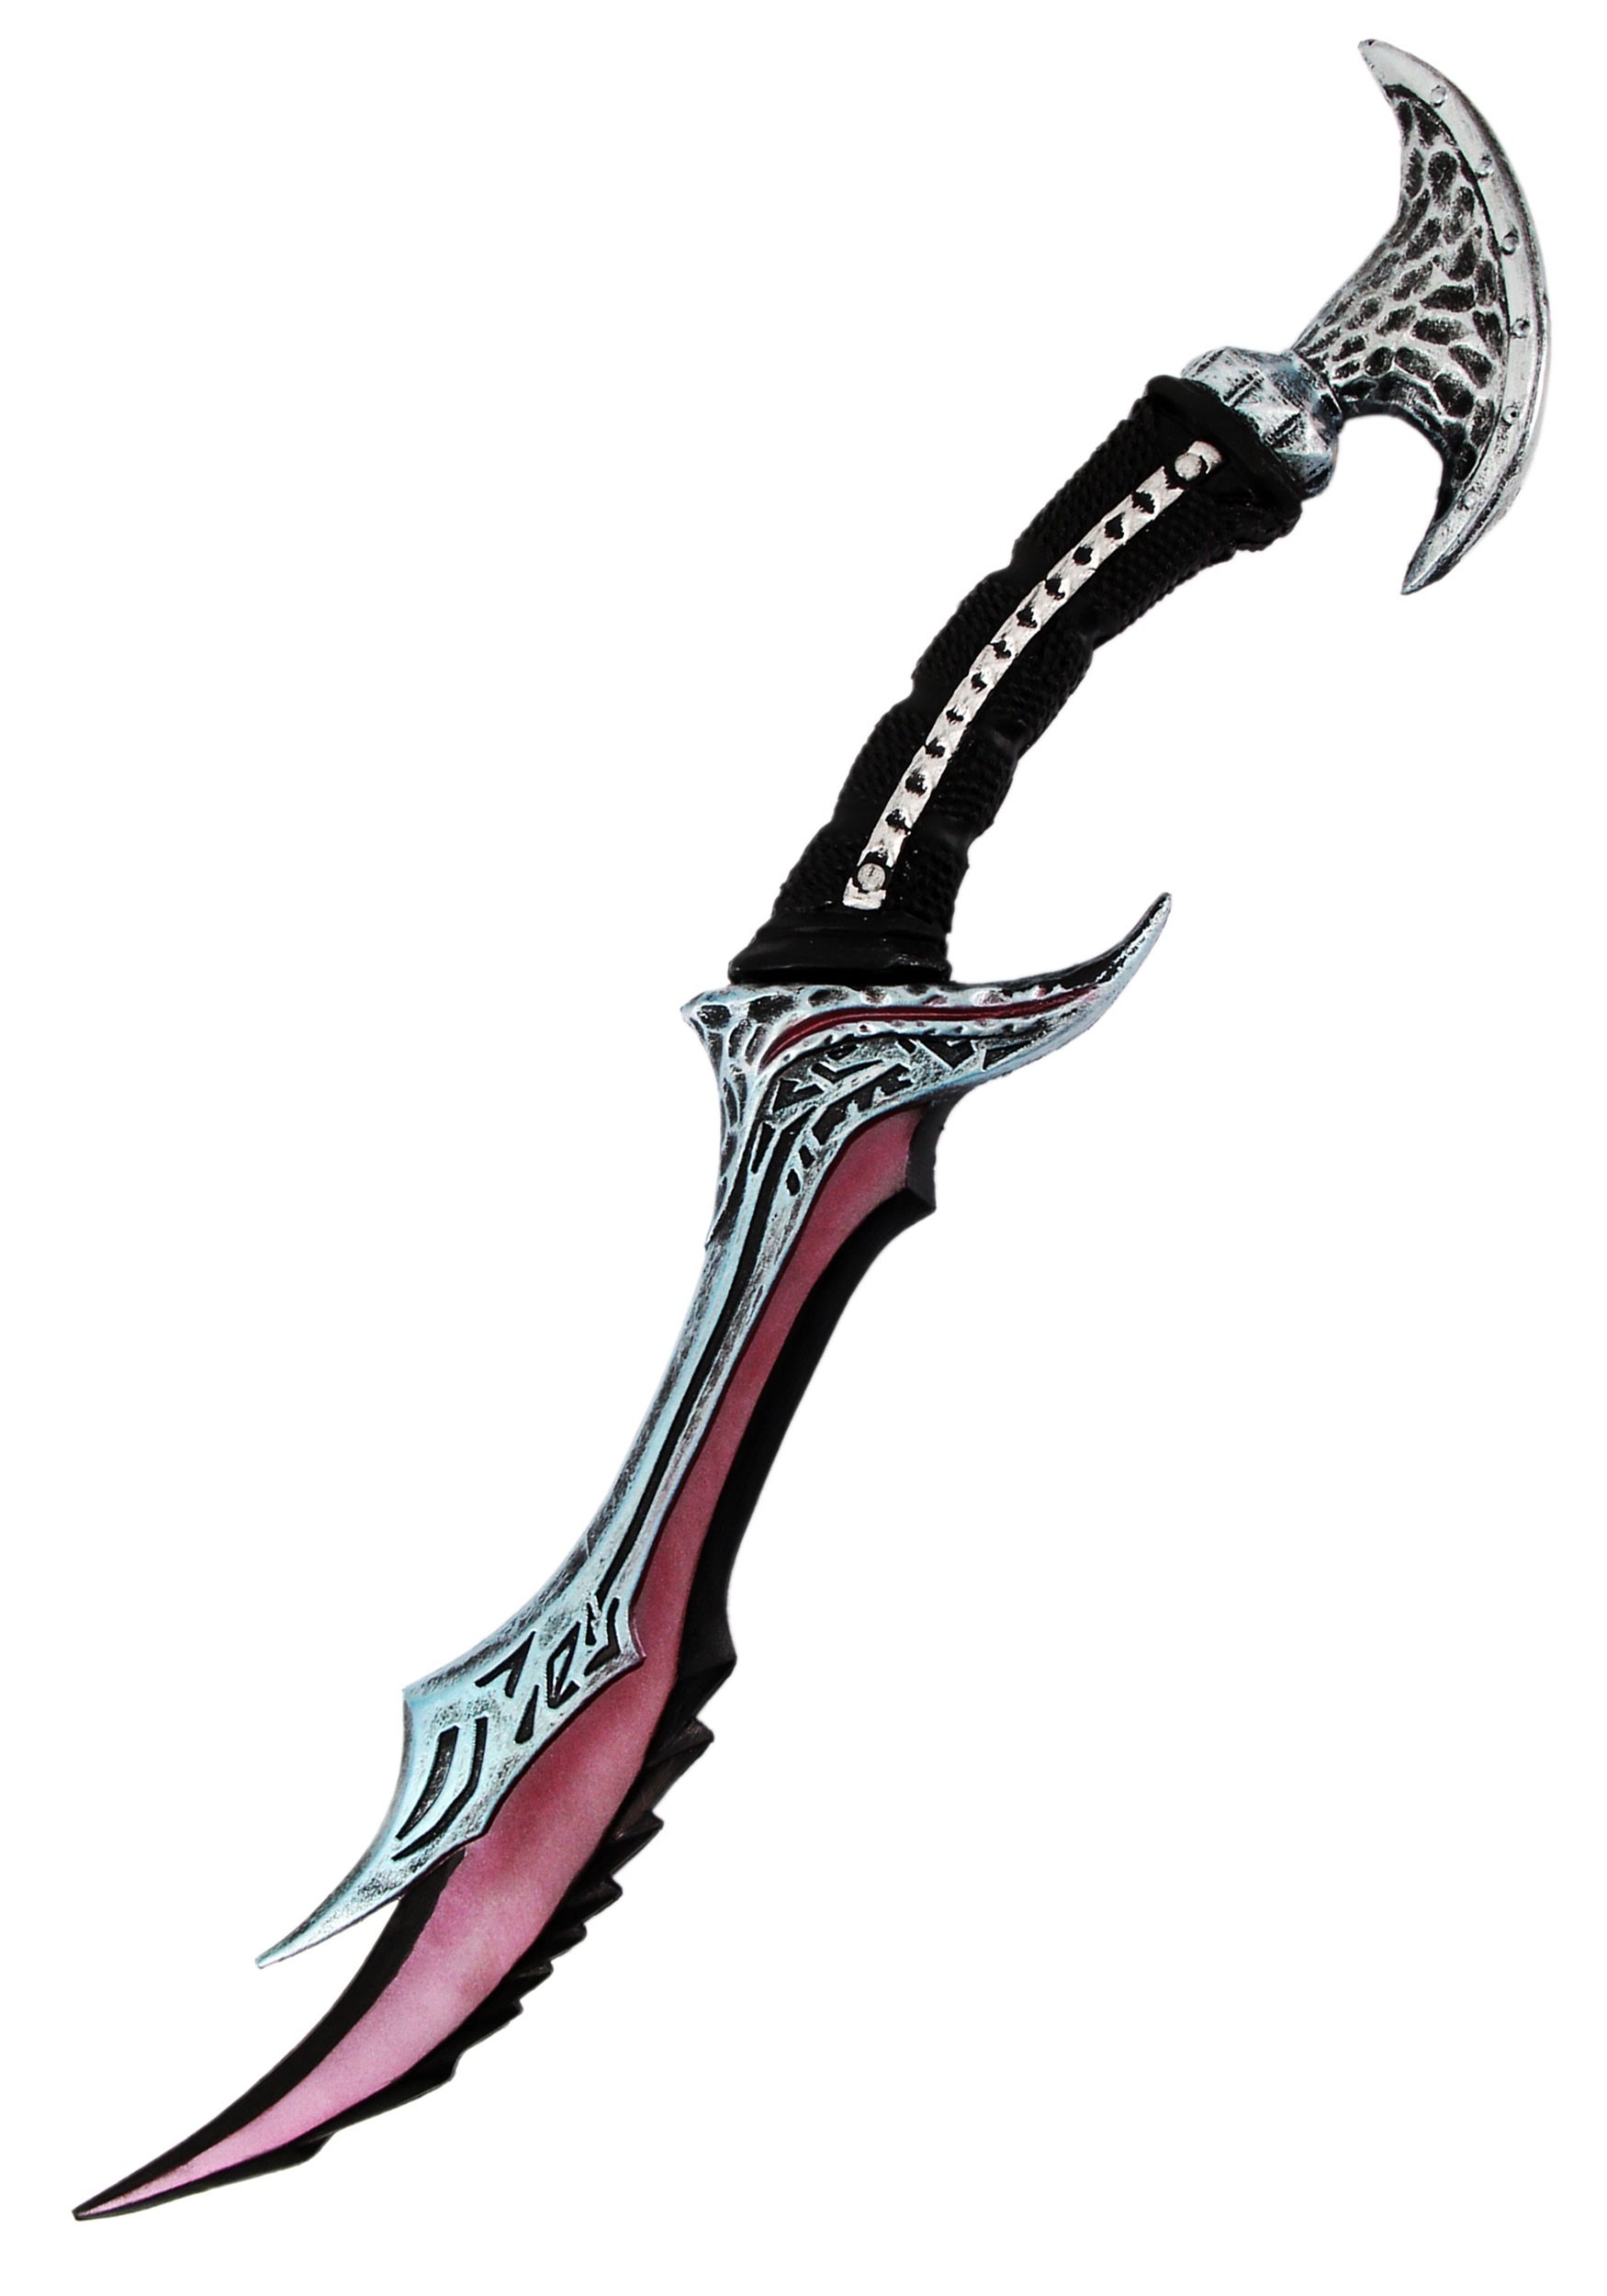 Elder Scrolls Daedric Toy Dagger